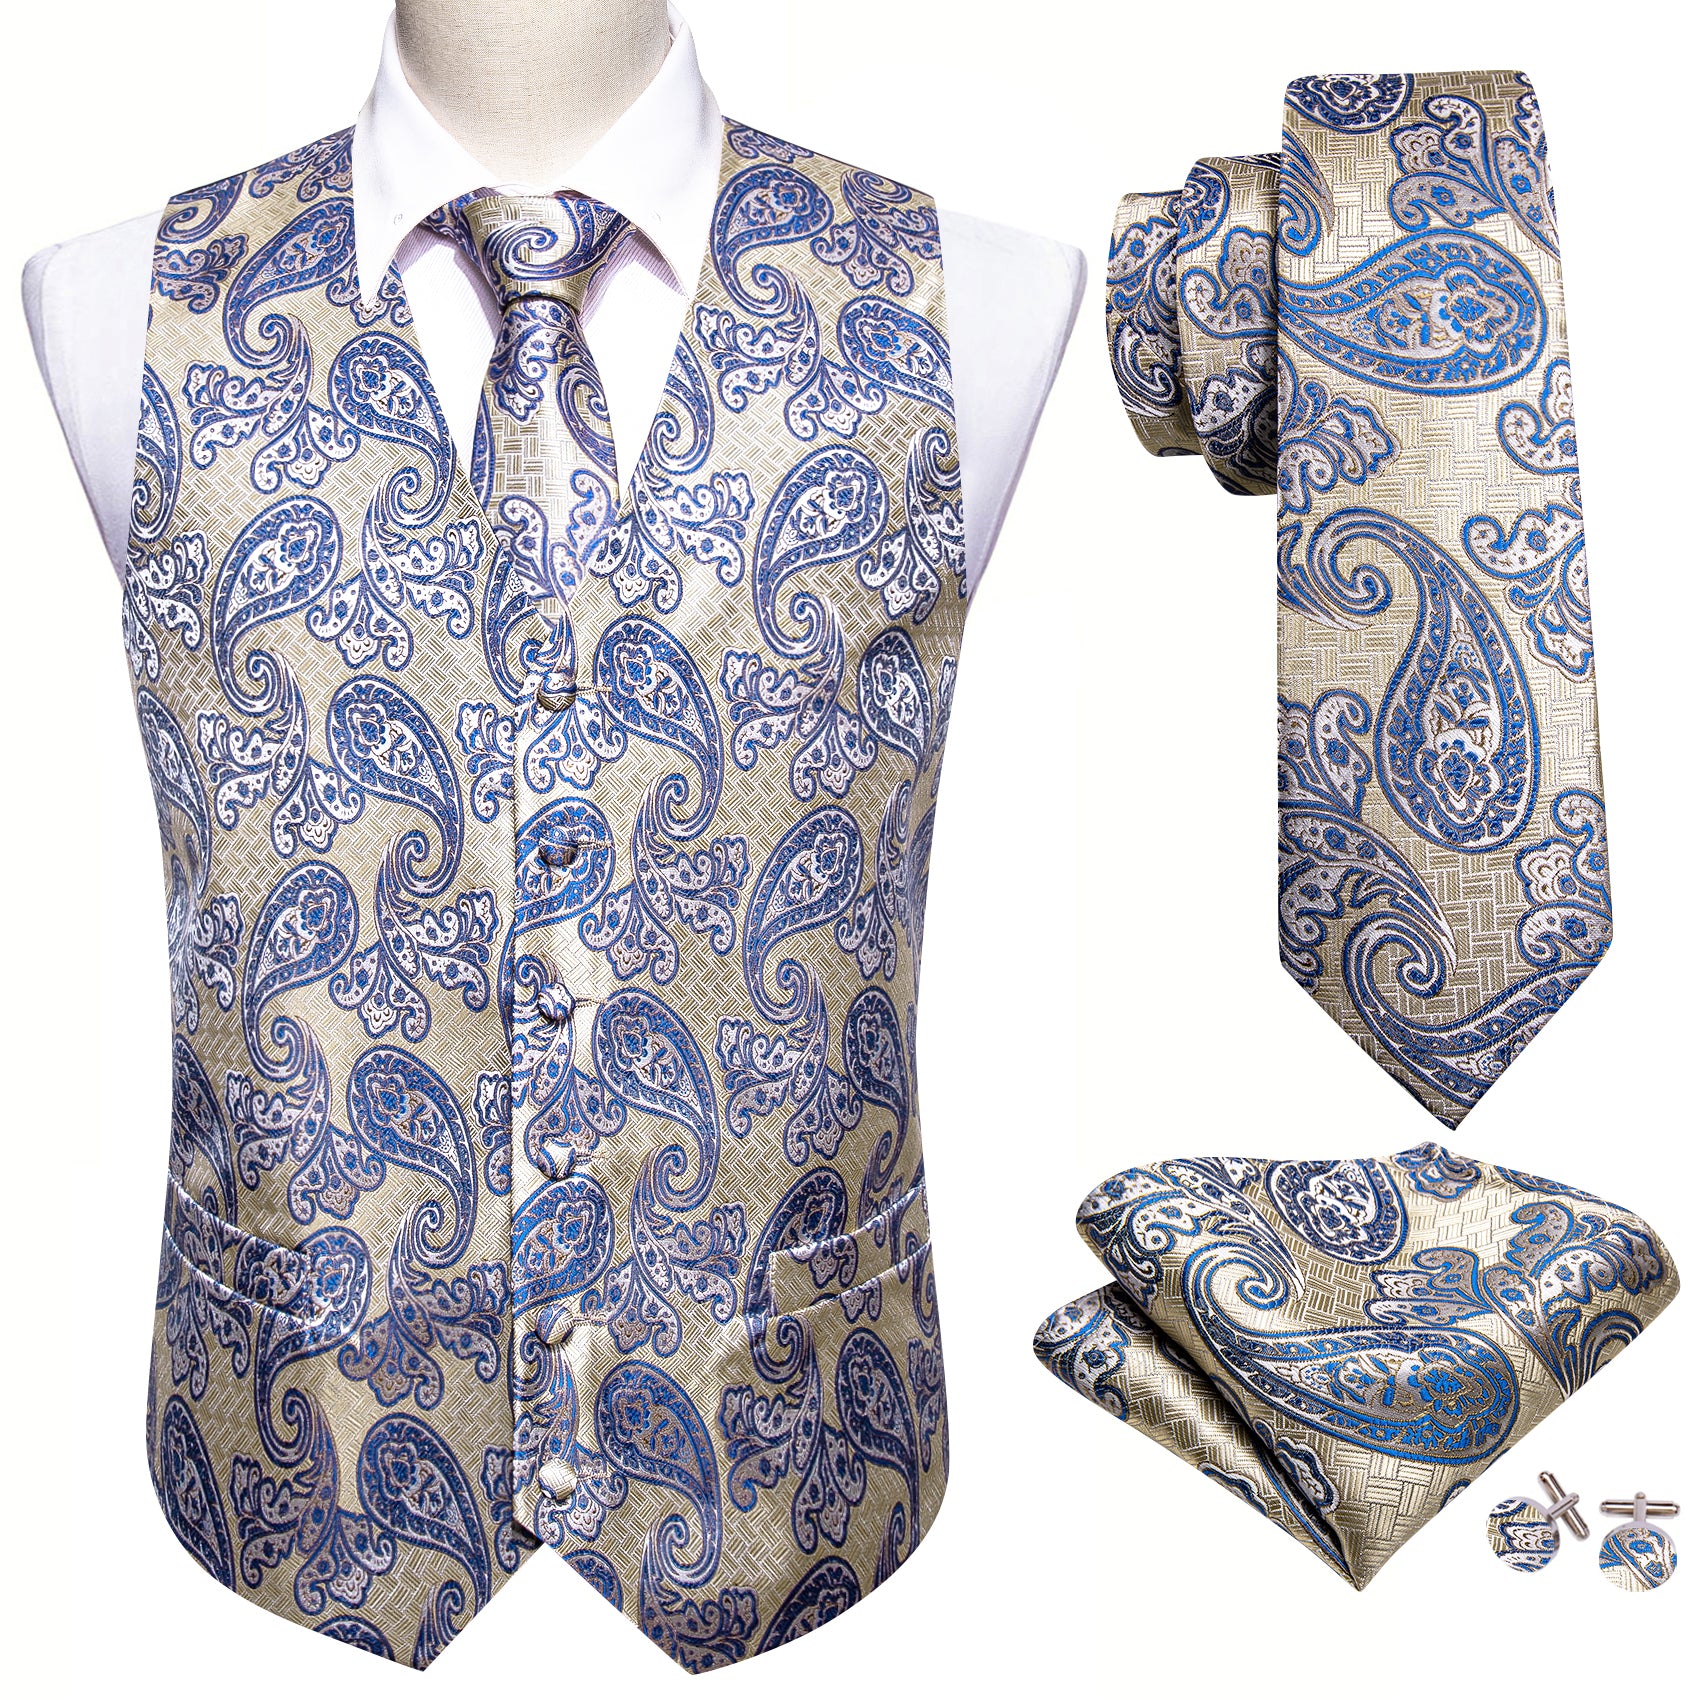 Barry.wang Men's Vest Silver Blue Paisley Silk Vest Necktie Pocket Square Cufflinks Set Classic